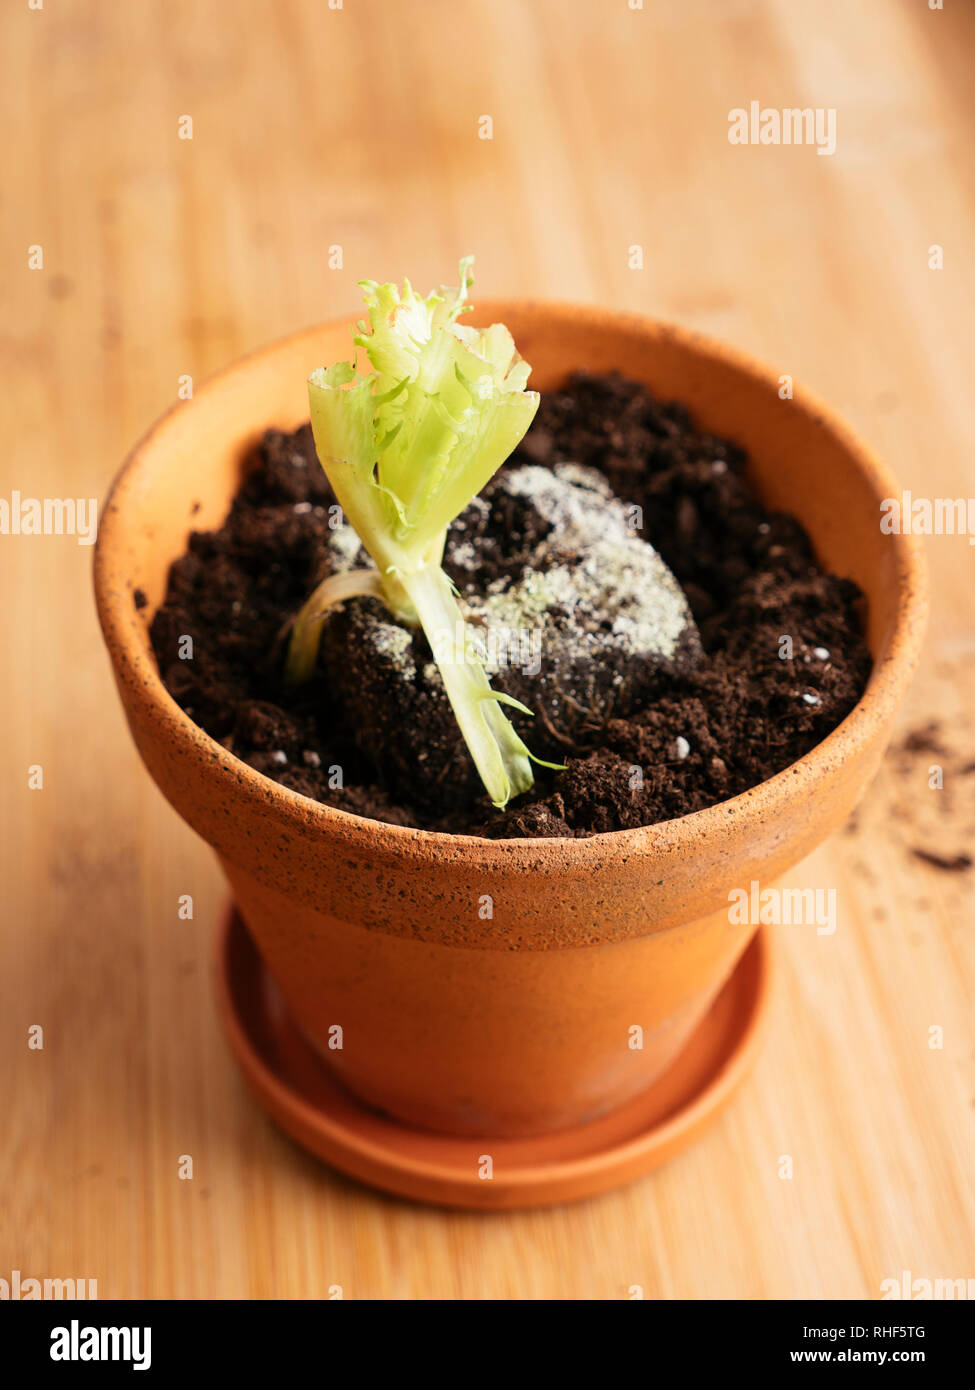 Kopfsalat Botschaften mit Wurzeln in einem Topf umgepflanzt eine neue Kopfsalat zu produzieren. Stockfoto